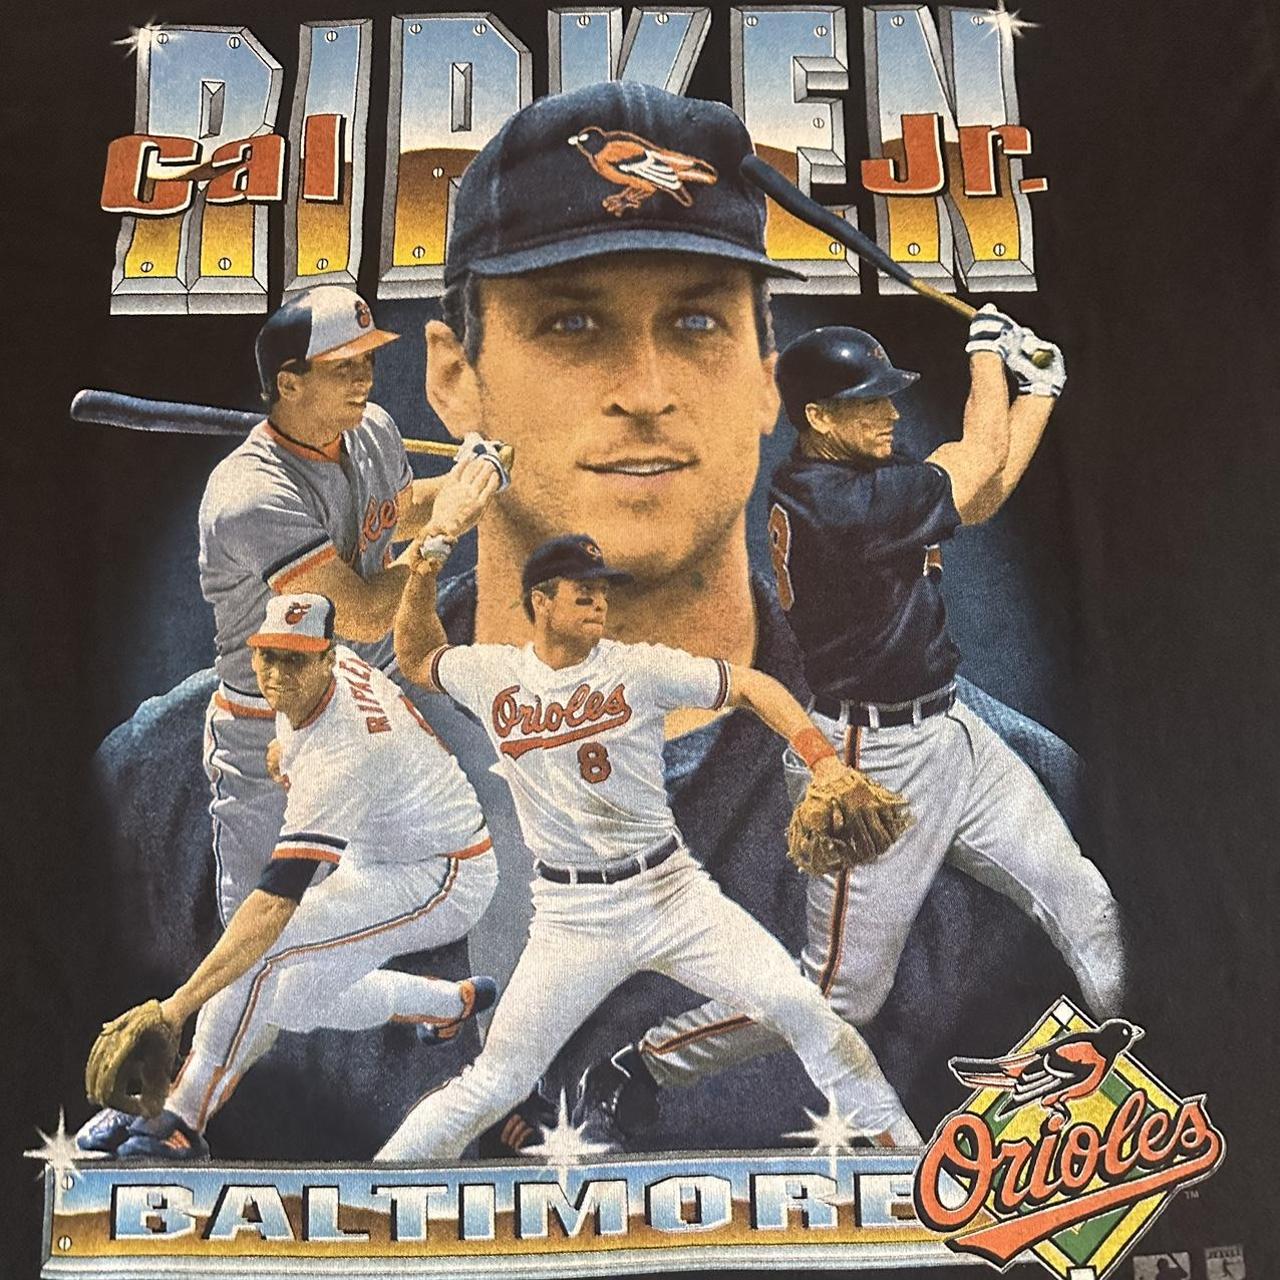 Vintage 90s T-shirt CAL RIPKEN Baltimore Orioles Baseball Mlb 